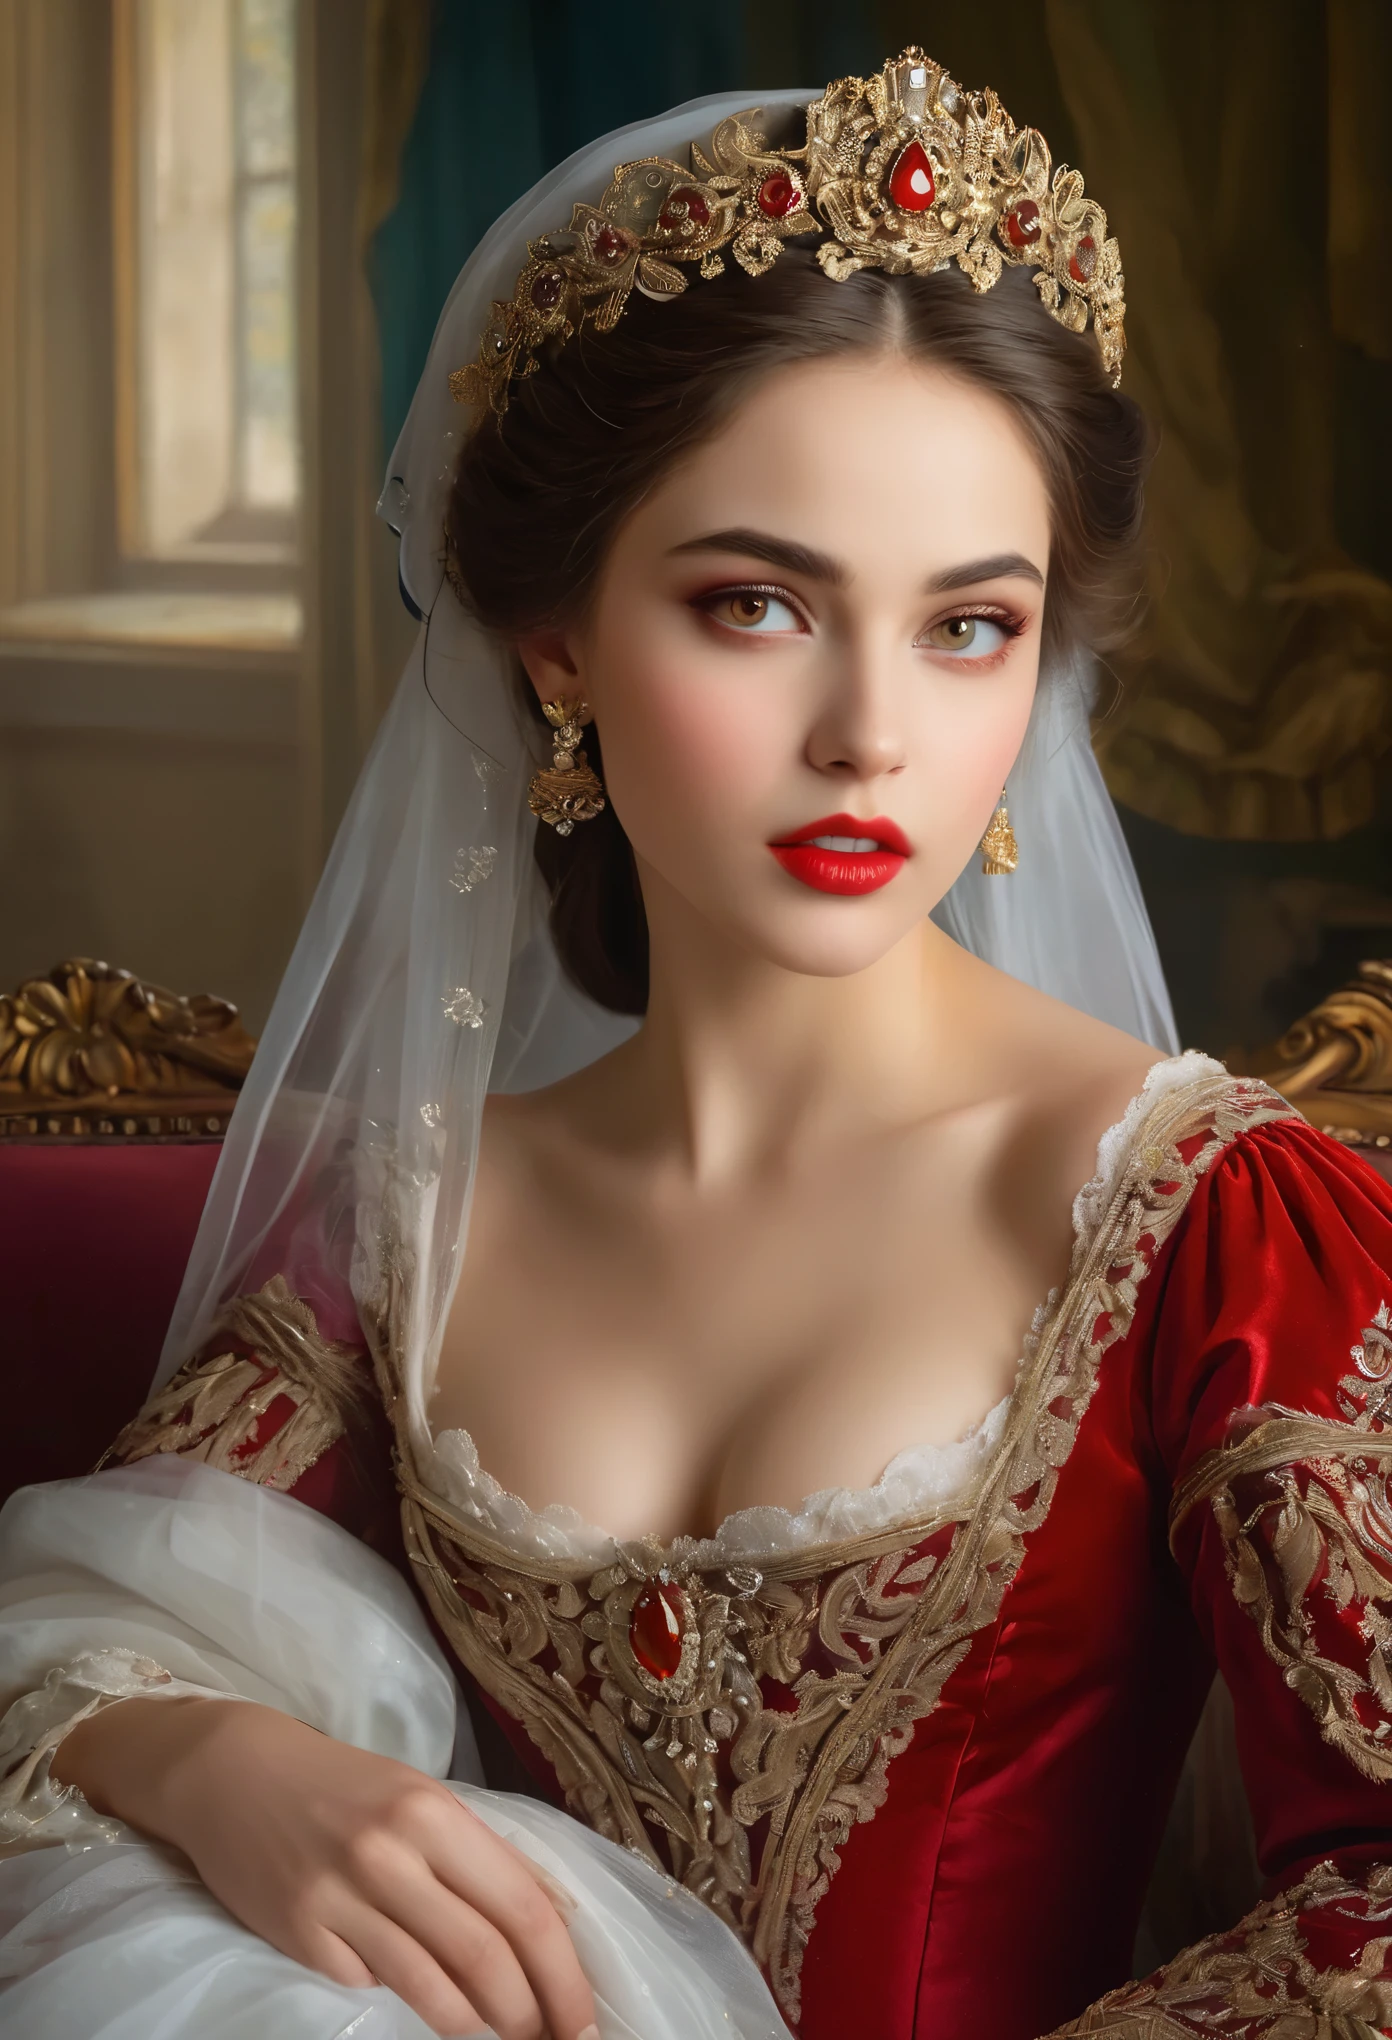 (hohe Auflösung,Meisterwerk:1.2),(Realistisch:1.37)Porträt eines russischen Vampirmädchens aus dem 18. Jahrhundert von unvergleichlicher Schönheit. Sie hat bezaubernde rote Augen und zarte rosige Lippen. Long fangs, Das Porträt ist bis ins kleinste Detail sorgfältig gezeichnet., Erfassen Sie die subtilen Nuancen ihrer Gesichtszüge. Sie trägt ein wunderschönes Seidenkleid, Verziert mit aufwendiger Spitze und zarter Stickerei. Dieses Gemälde spricht vom Luxus der Zeit., Luxuriöse Samtvorhänge und goldene Möbel im Hintergrund. Die Beleuchtung ist weich und diffus, Markiere das Mädchen&#39;s anmutige Schönheit. Die Farben sind lebendig und reichhaltig, Schaffen Sie überzeugende visuelle Erlebnisse. (Dieses Porträt ist im klassischen Porträtstil gemalt.:1.5), Erinnert an die Werke berühmter Künstler der Zeit. Es strahlt Eleganz aus, Anmut, Raffinesse. scharfe lange Krallen, (purpurrote Augen:1.4), Flammenrote Augen, (Scharfe Reißzähne sind durch den Spalt zwischen seinen Lippen sichtbar:1.8), (Es gibt einen Bissabdruck am Hals:1.5),.２Es gibt zwei Löcher